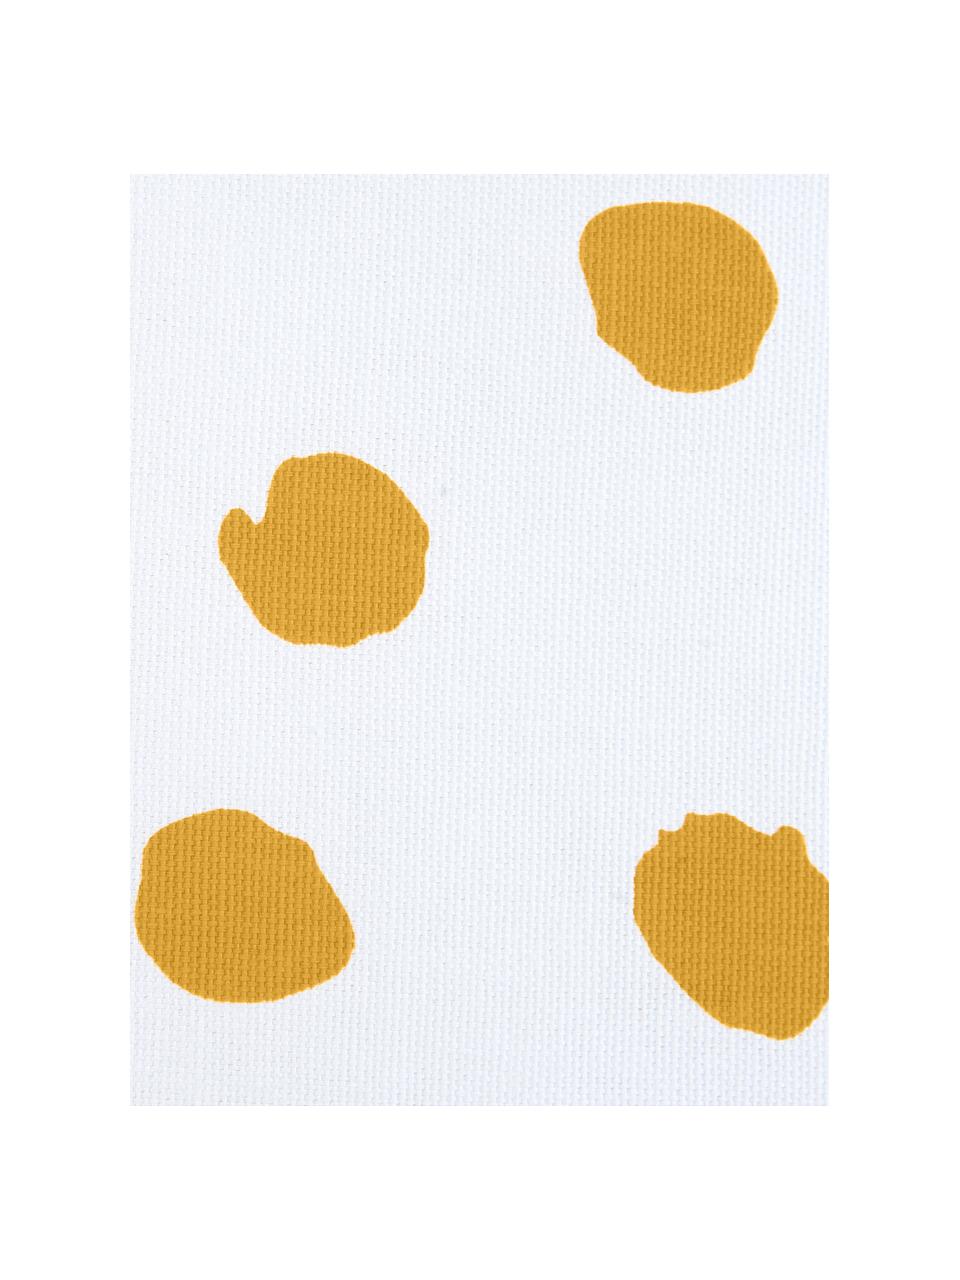 Federa arredo punteggiata color giallo/bianco Riley, Cotone, Arancione, bianco, Larg. 40 x Lung. 40 cm